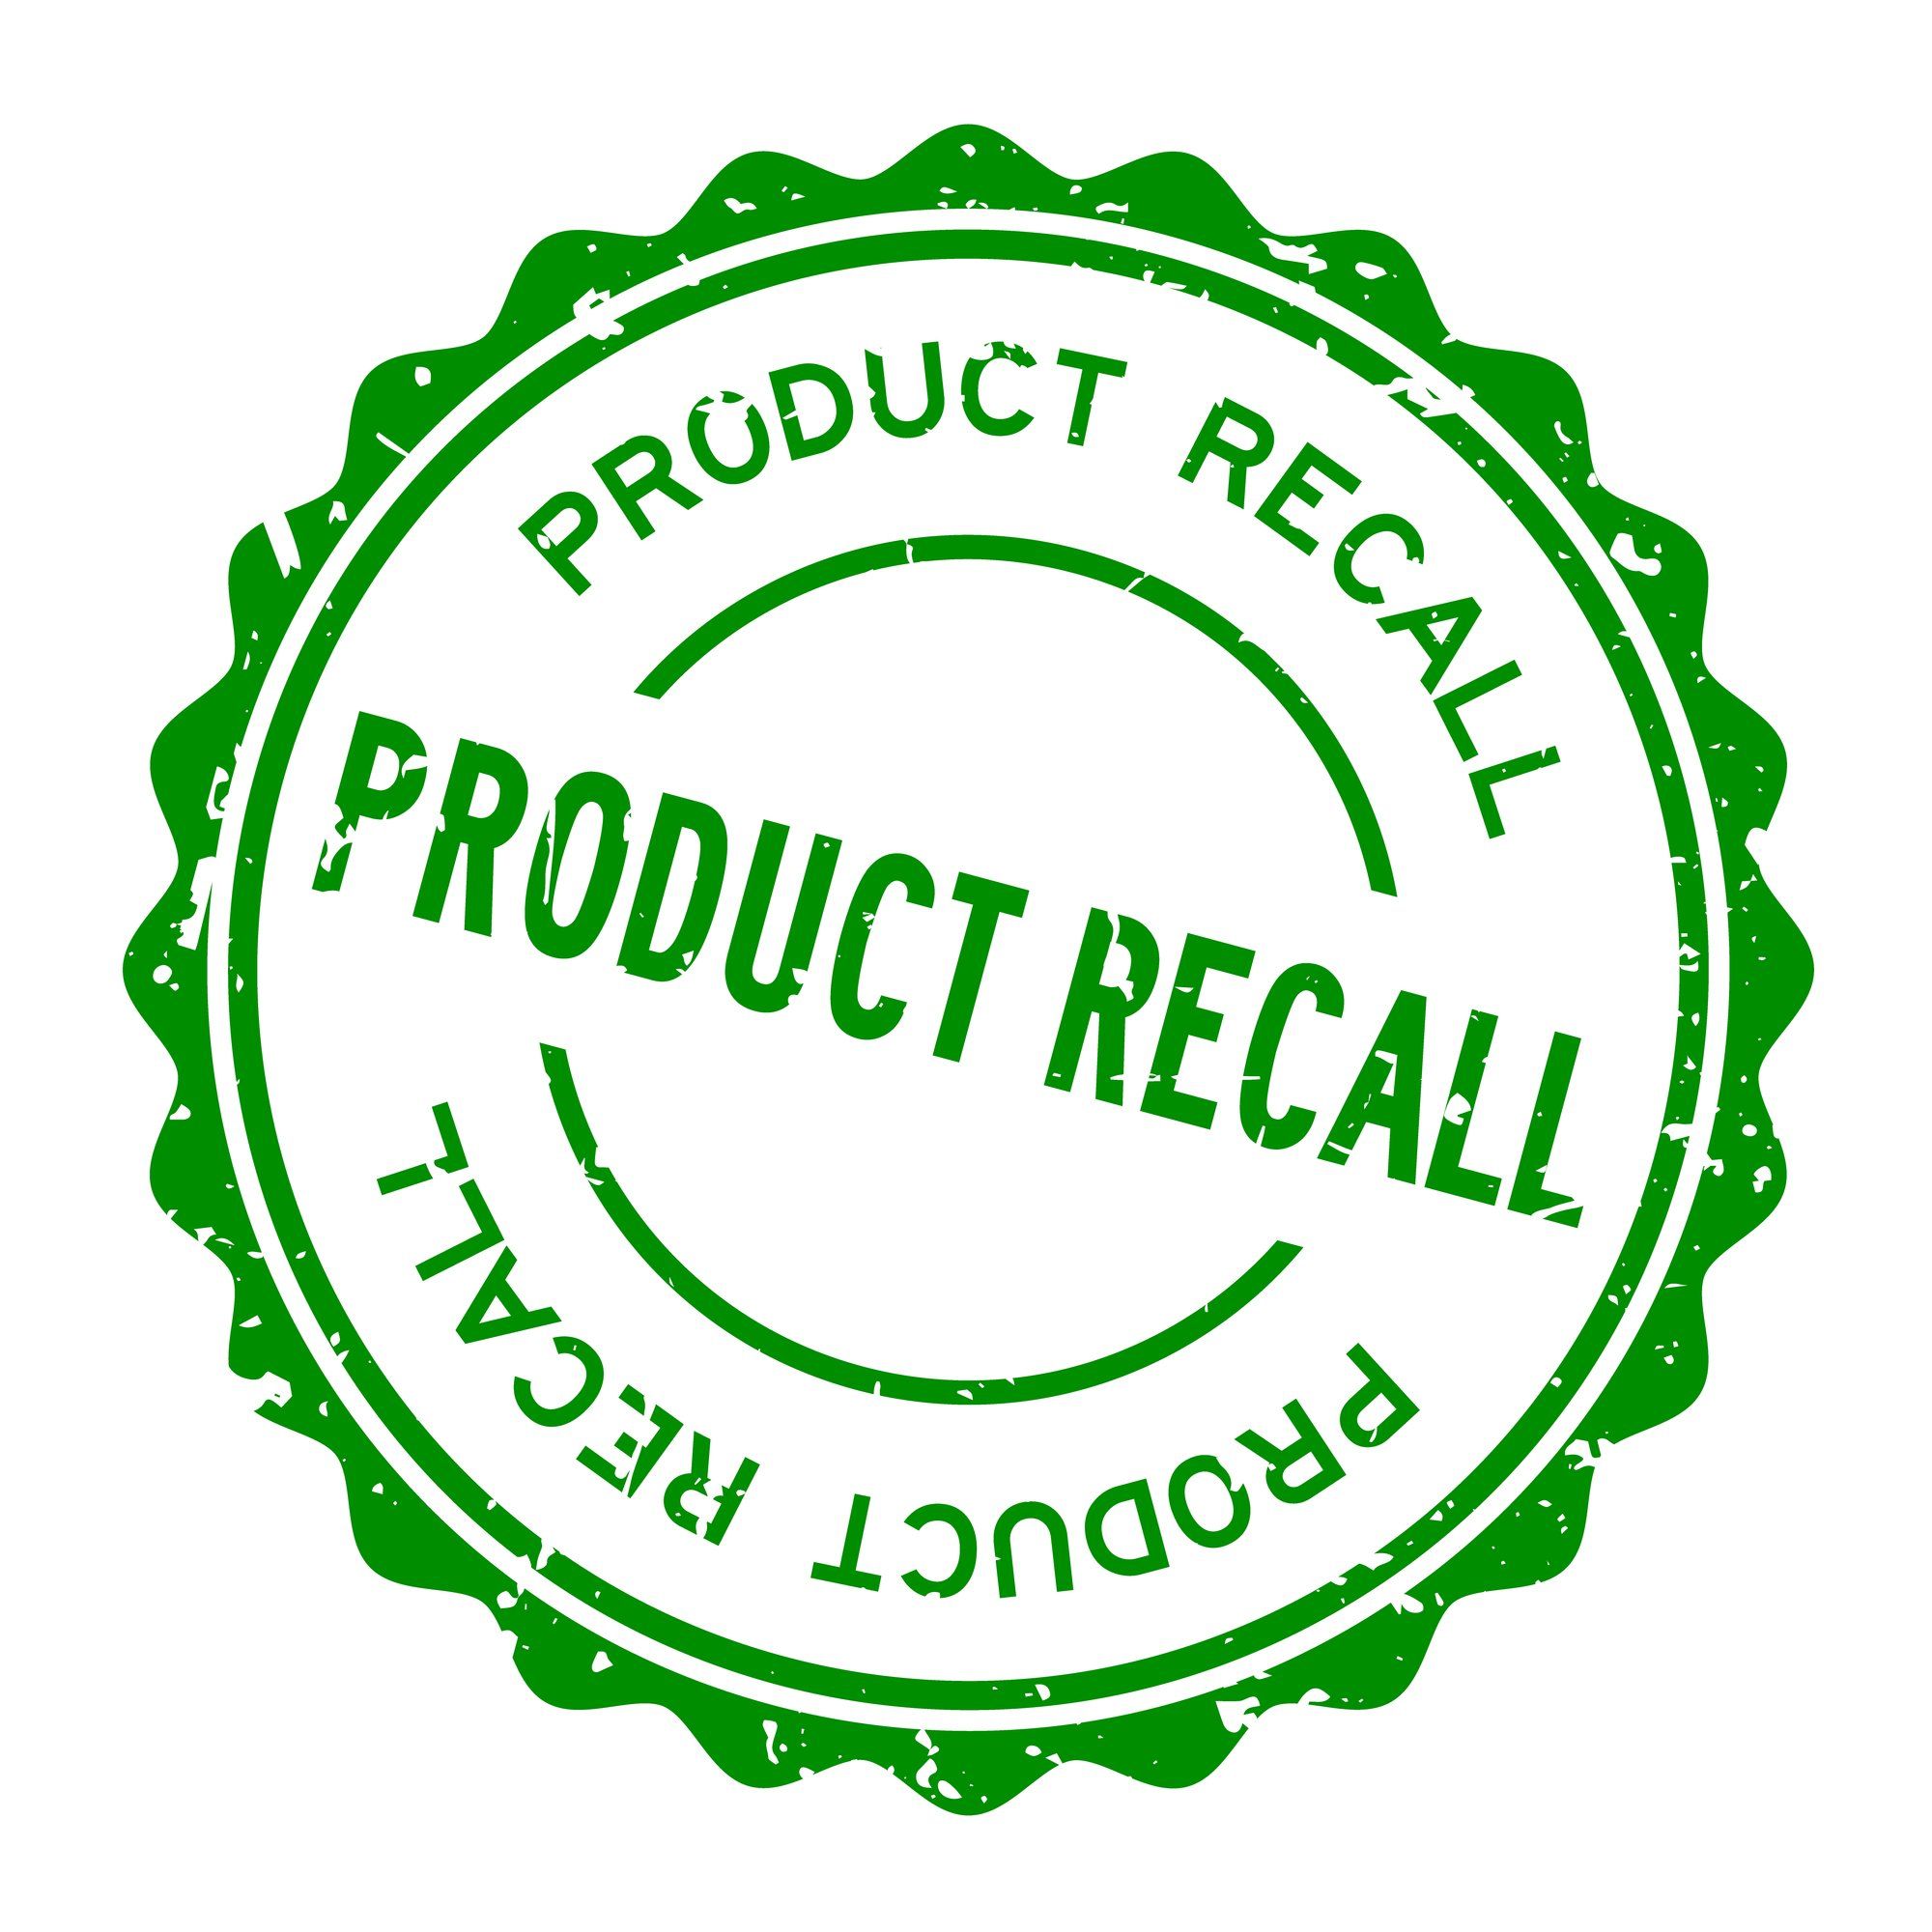 Product Recall Stamp regarding the recent food recalls